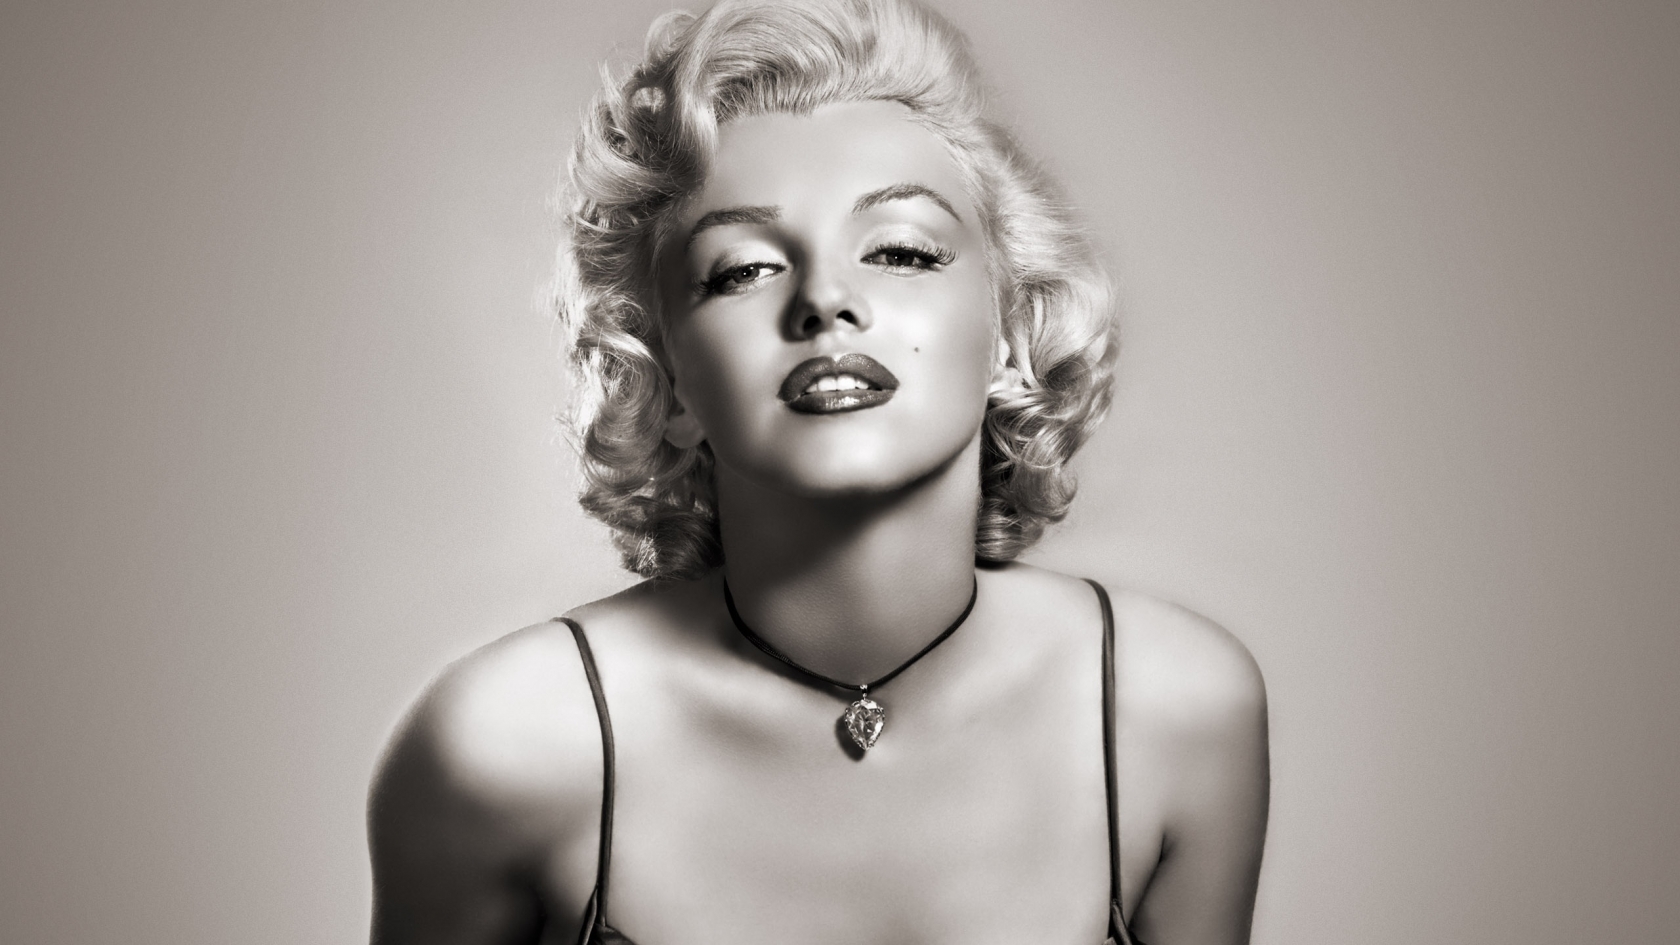 Gorgeous Marilyn Monroe for 1680 x 945 HDTV resolution